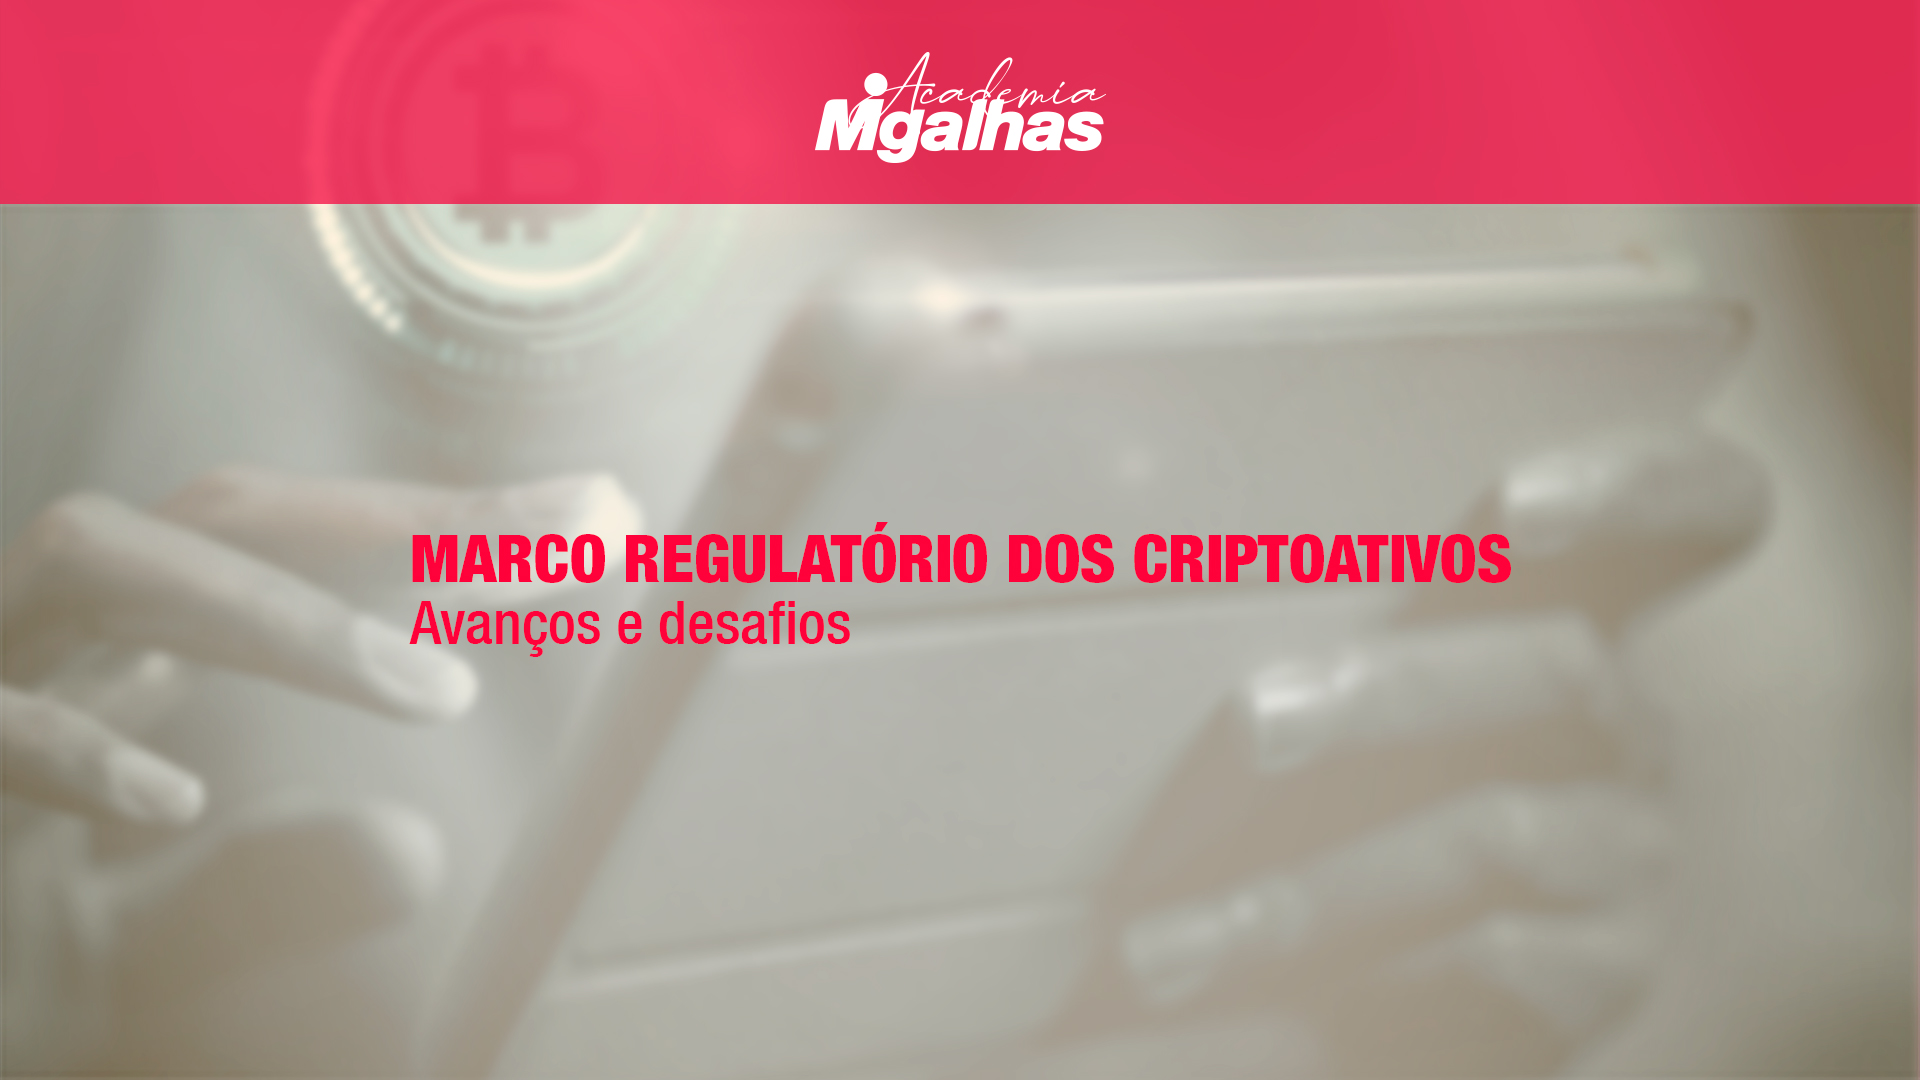 Marco Regulatório dos Criptoativos - Avanços e desafios